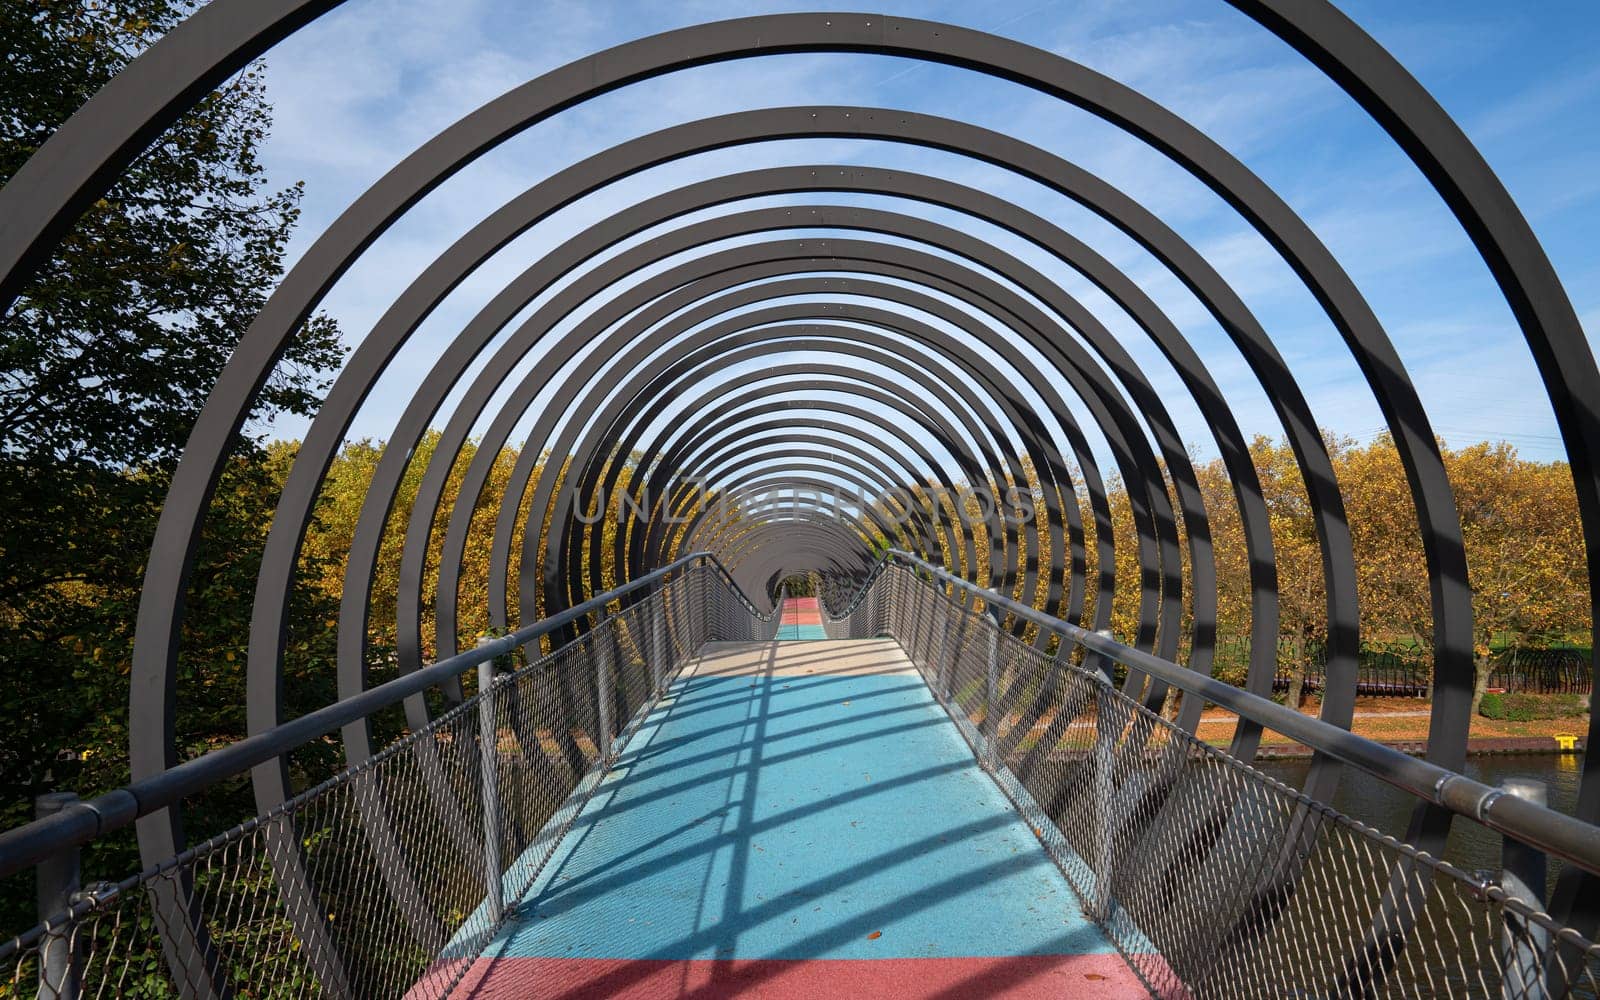 Bridge Slinky Springs to Fame, Oberhausen, Germany by alfotokunst